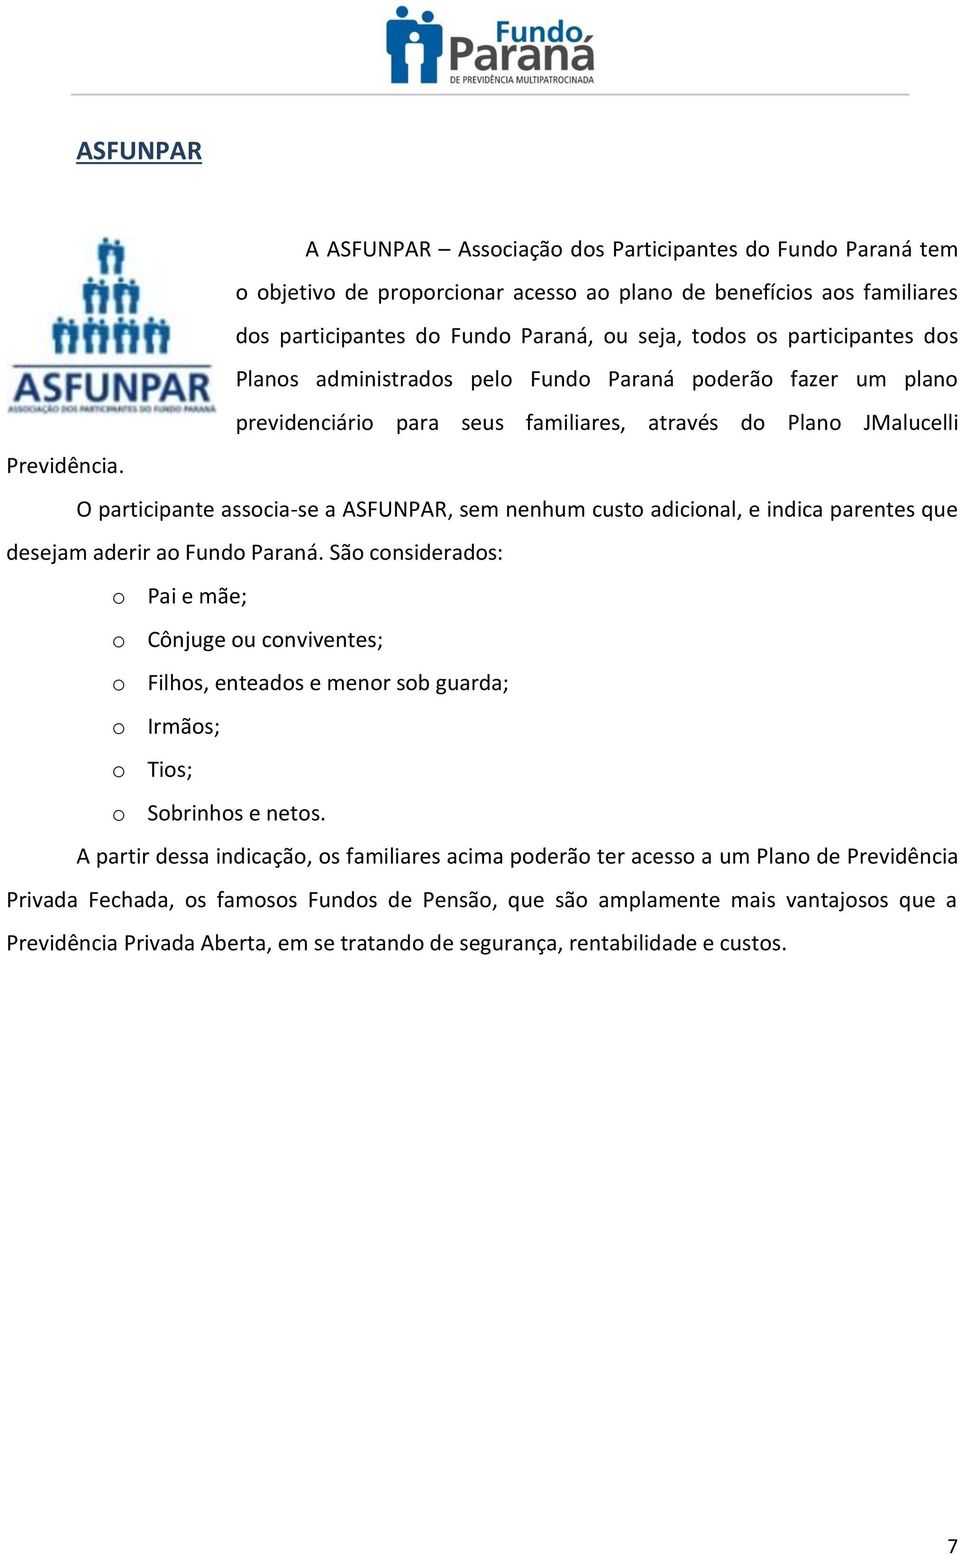 O participante associa-se a ASFUNPAR, sem nenhum custo adicional, e indica parentes que desejam aderir ao Fundo Paraná.